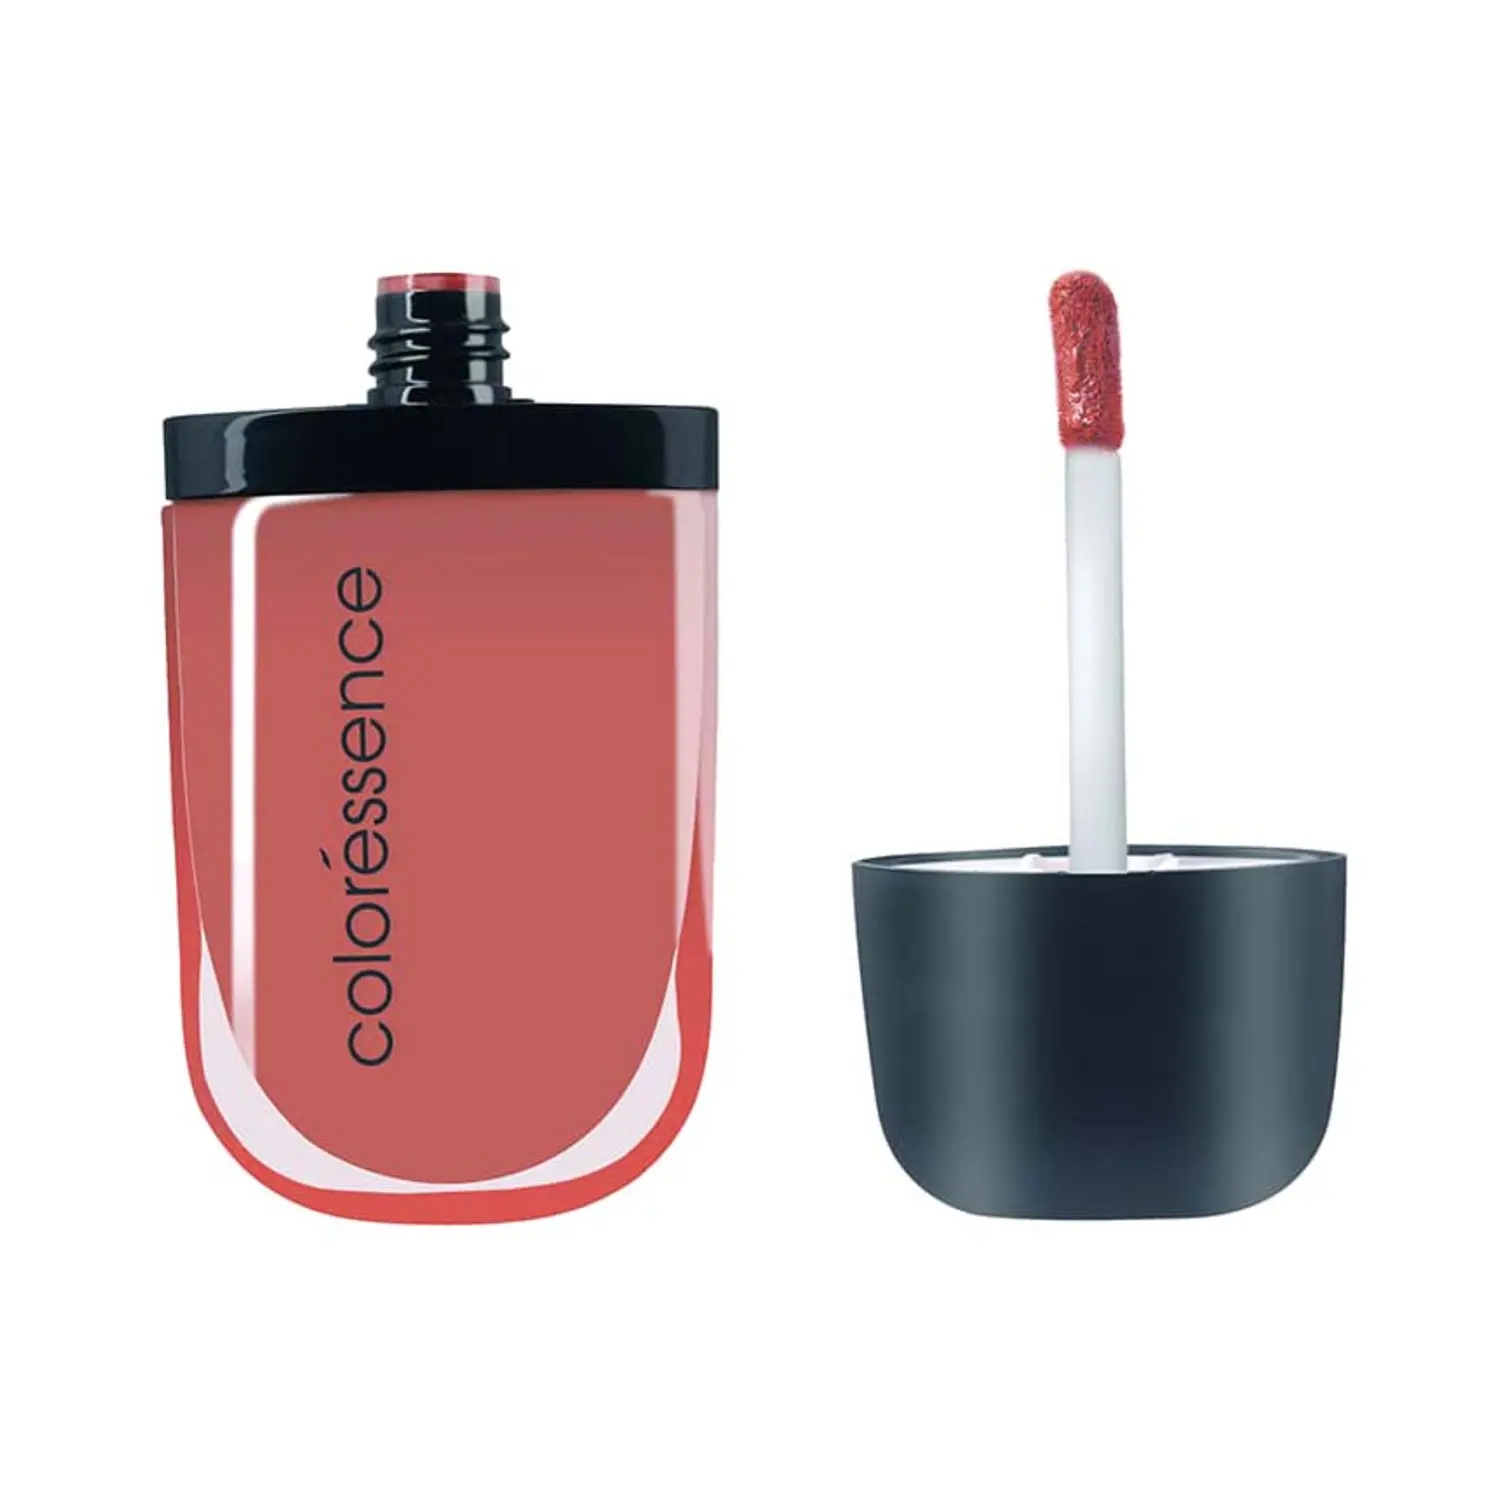 Coloressence | Coloressence Intense Soft Matte Liquid Lip Color Lipstick - Truffle (8ml)